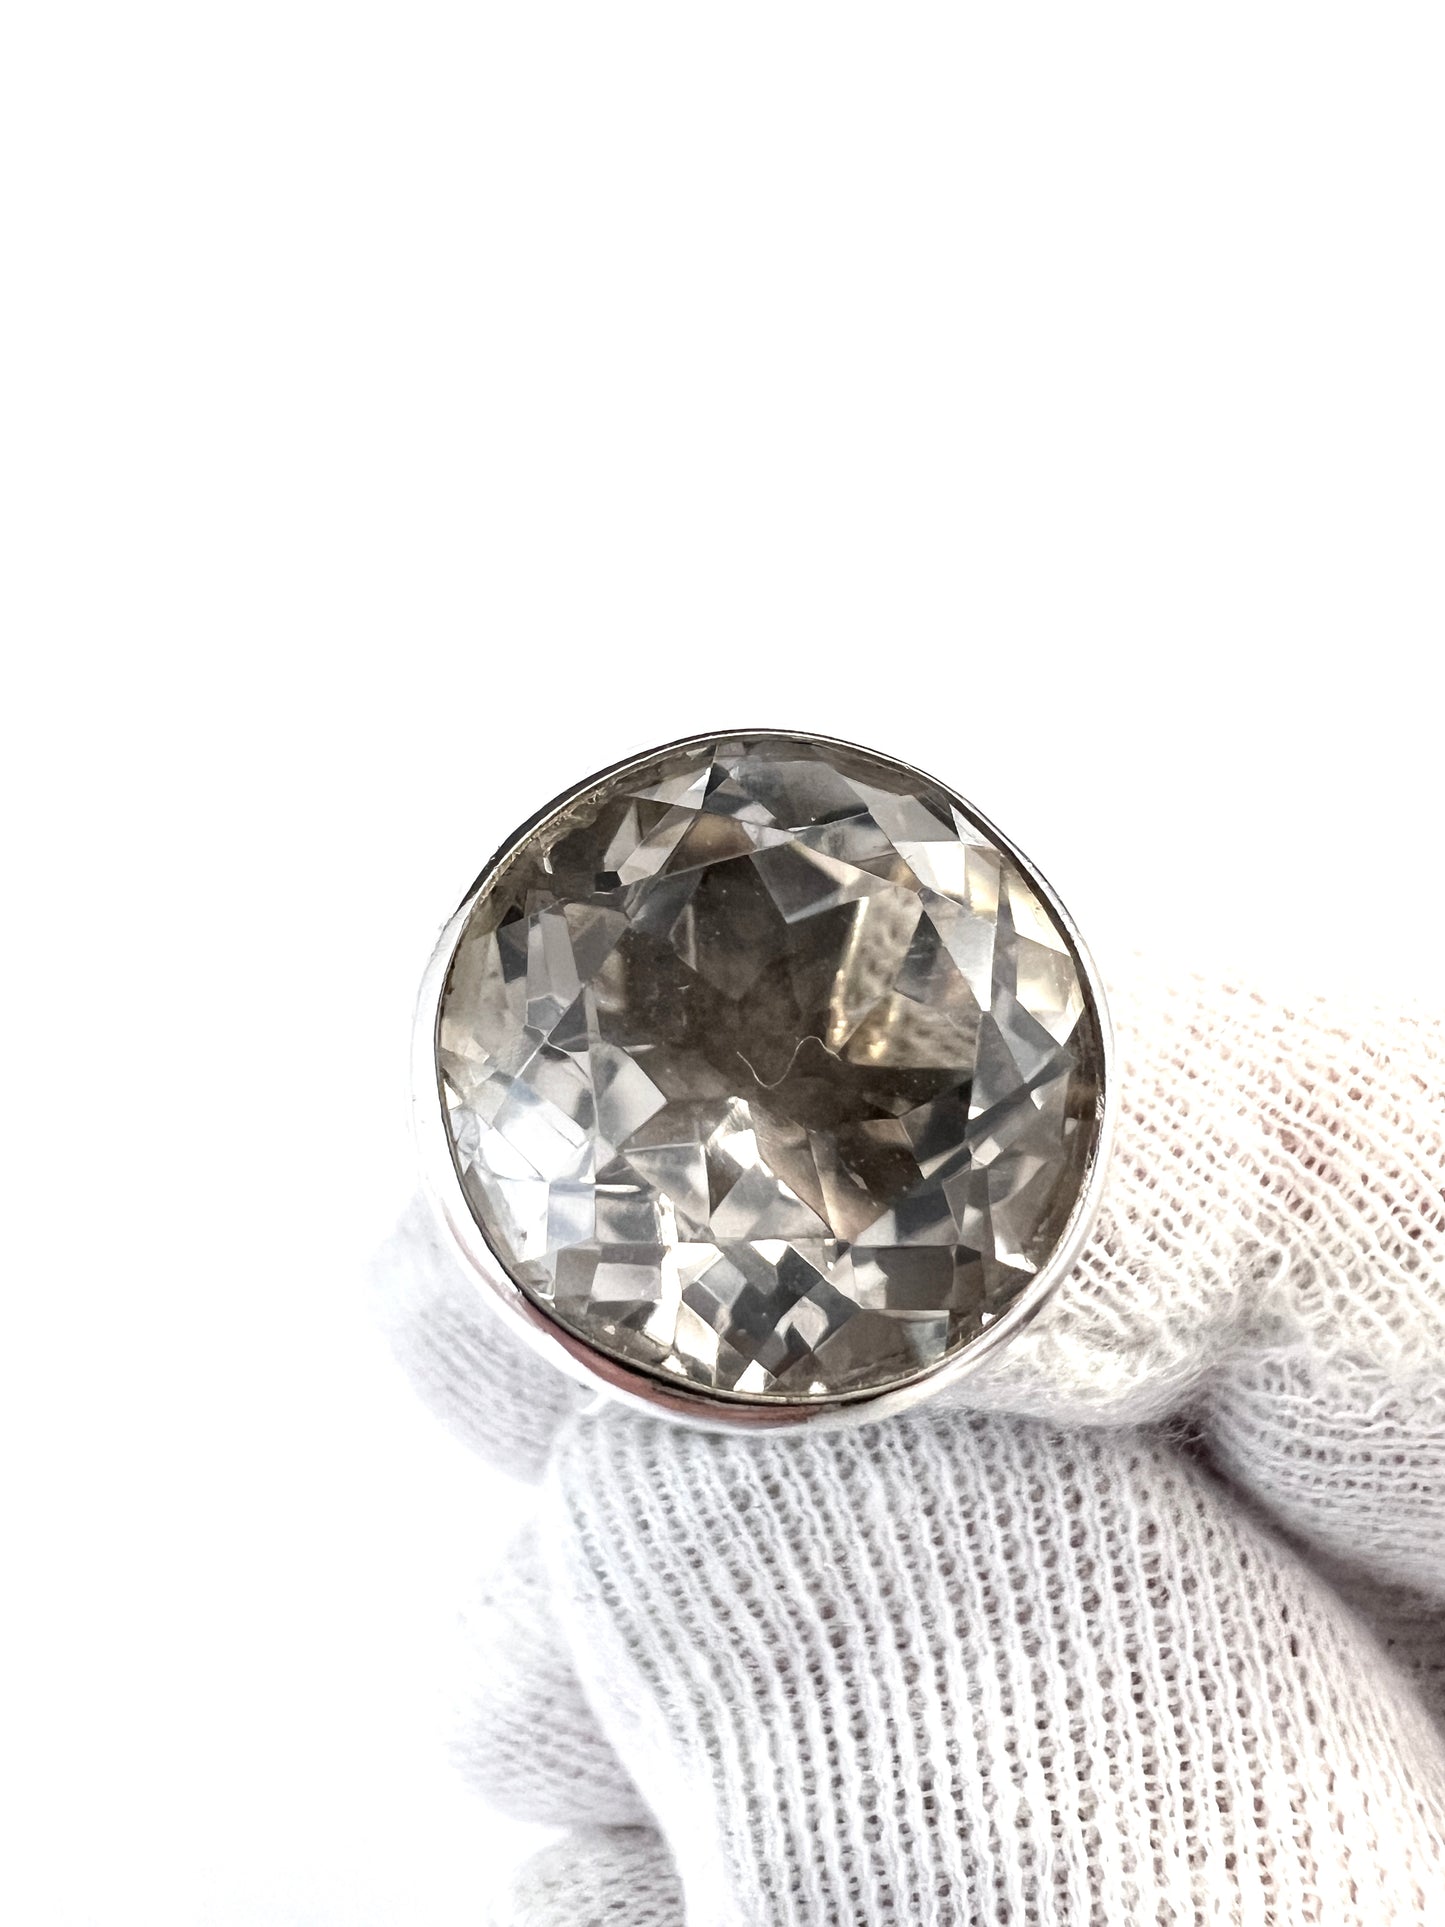 Hansen, Sweden 1965. Vintage Sterling Silver Rock Crystal Ring.